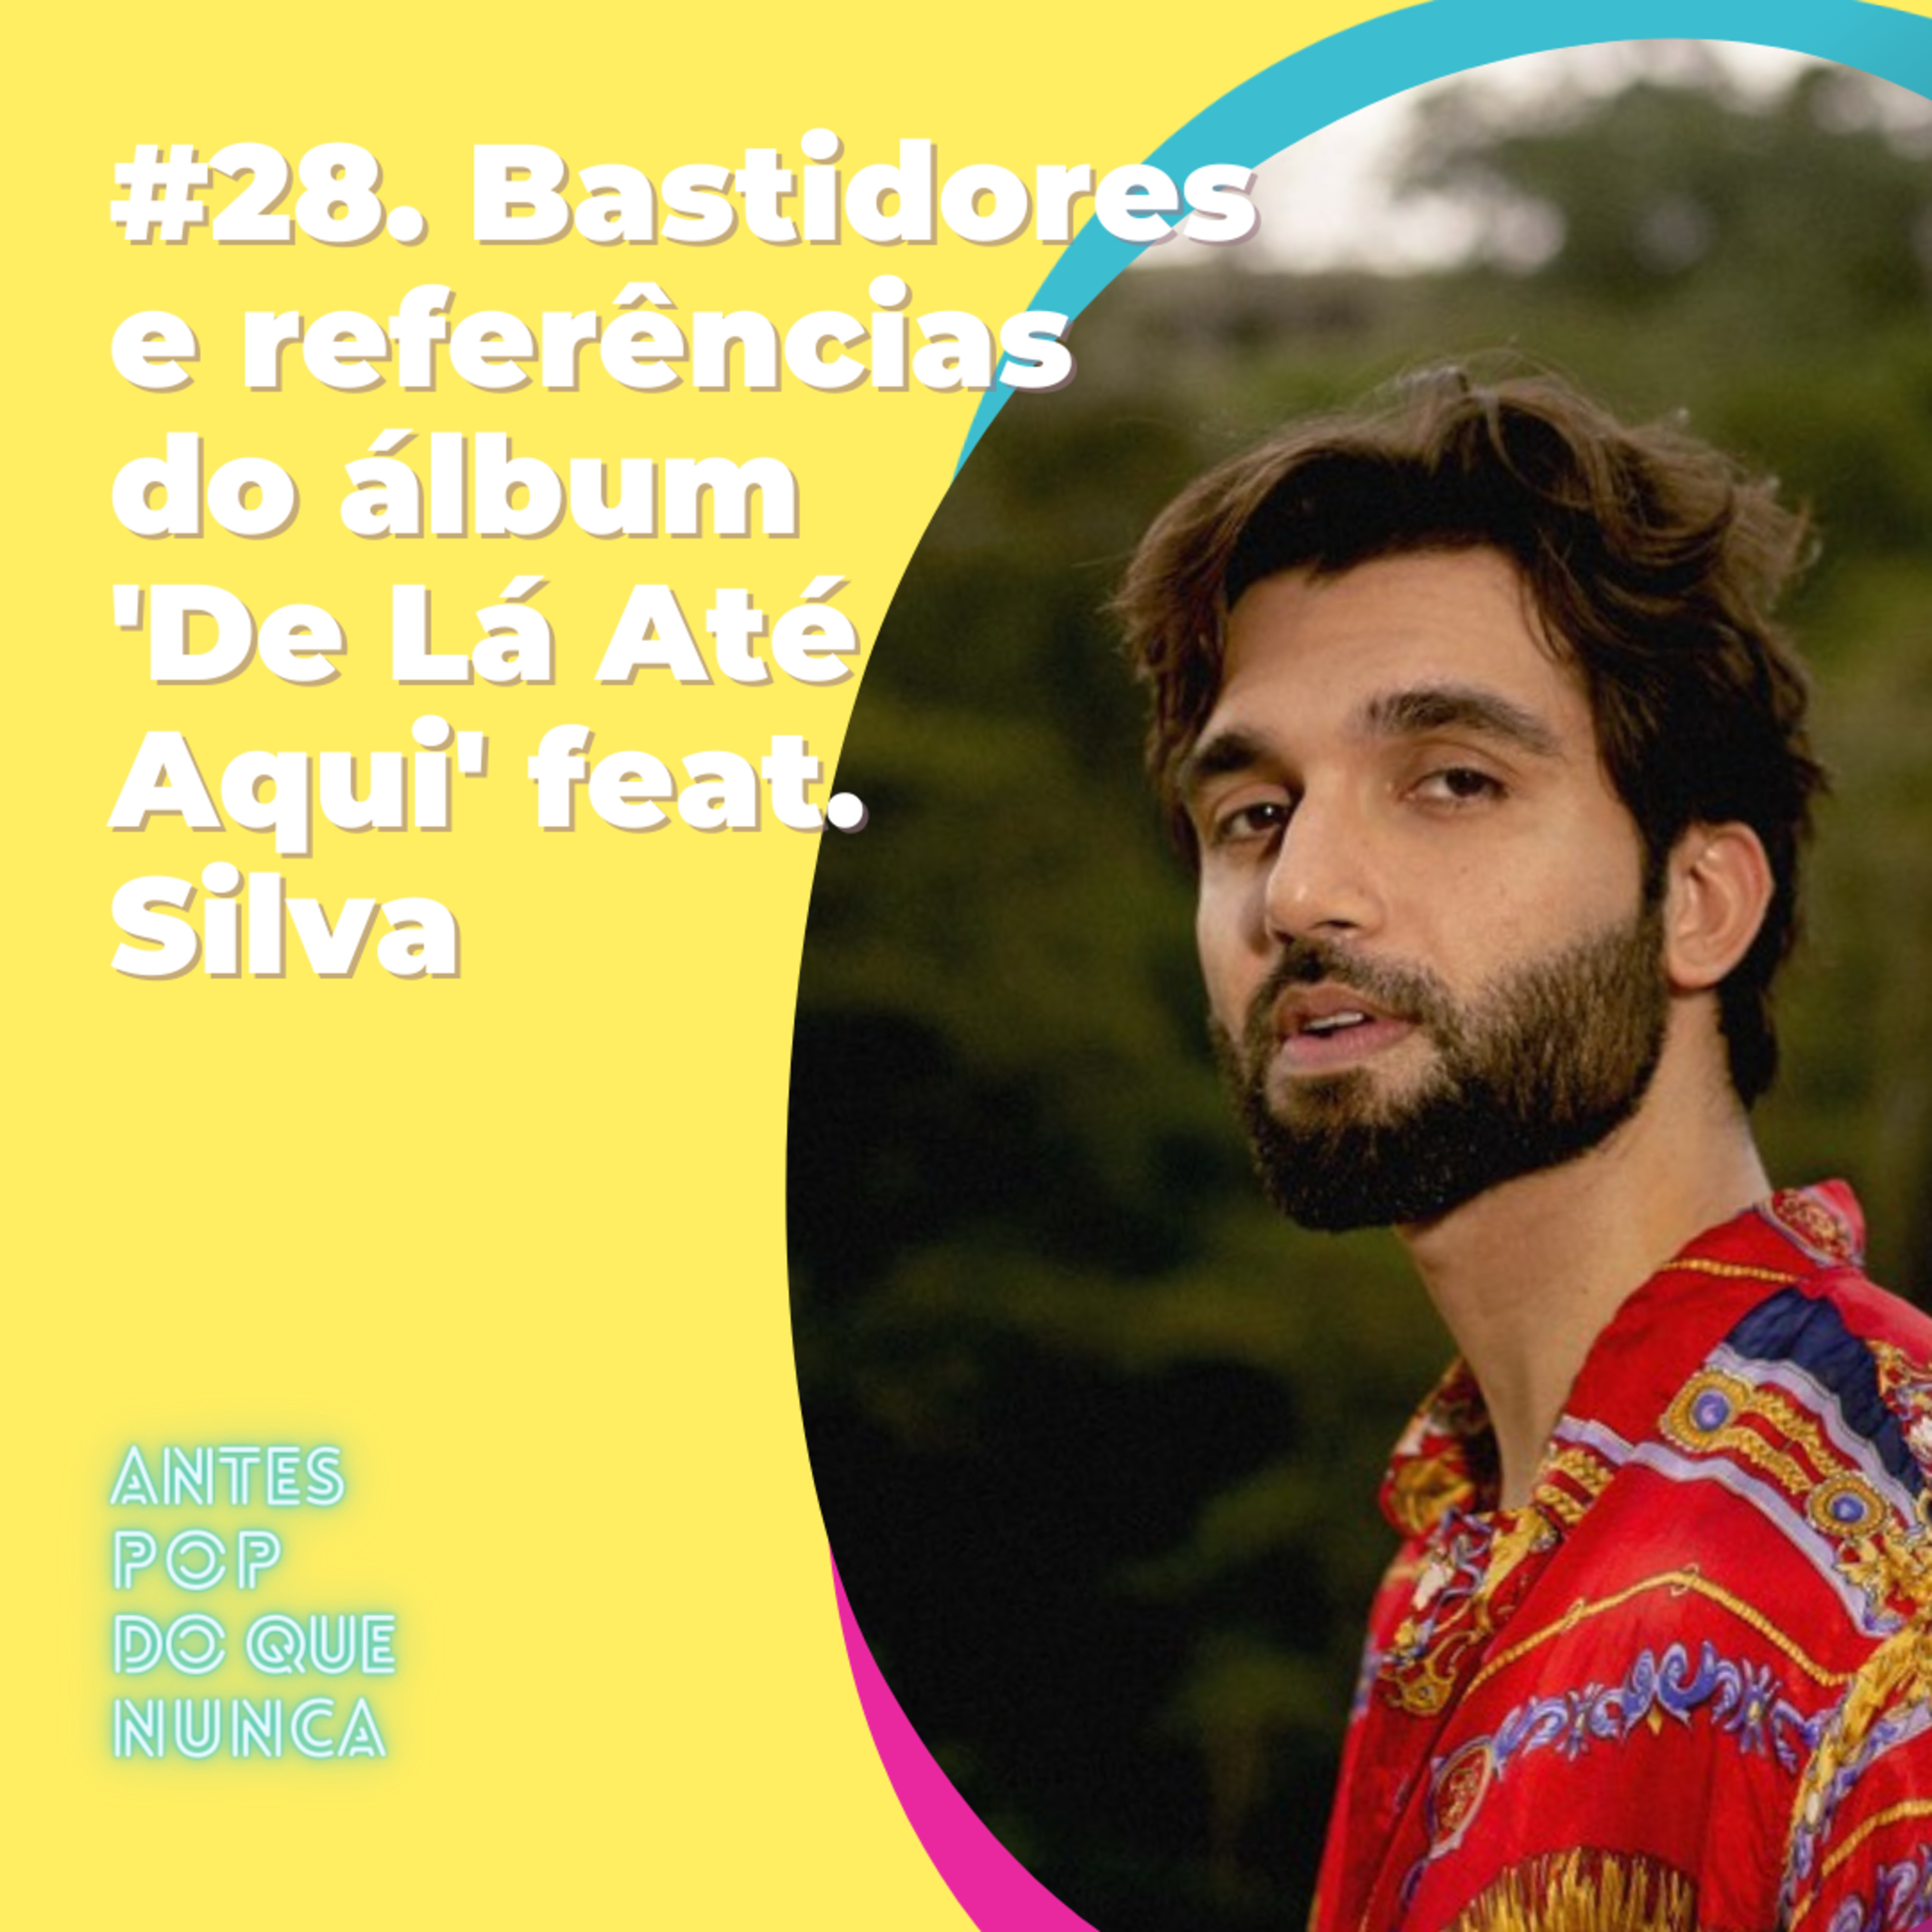 #28. Bastidores e referências do álbum 'De Lá Até Aqui' feat. Silva